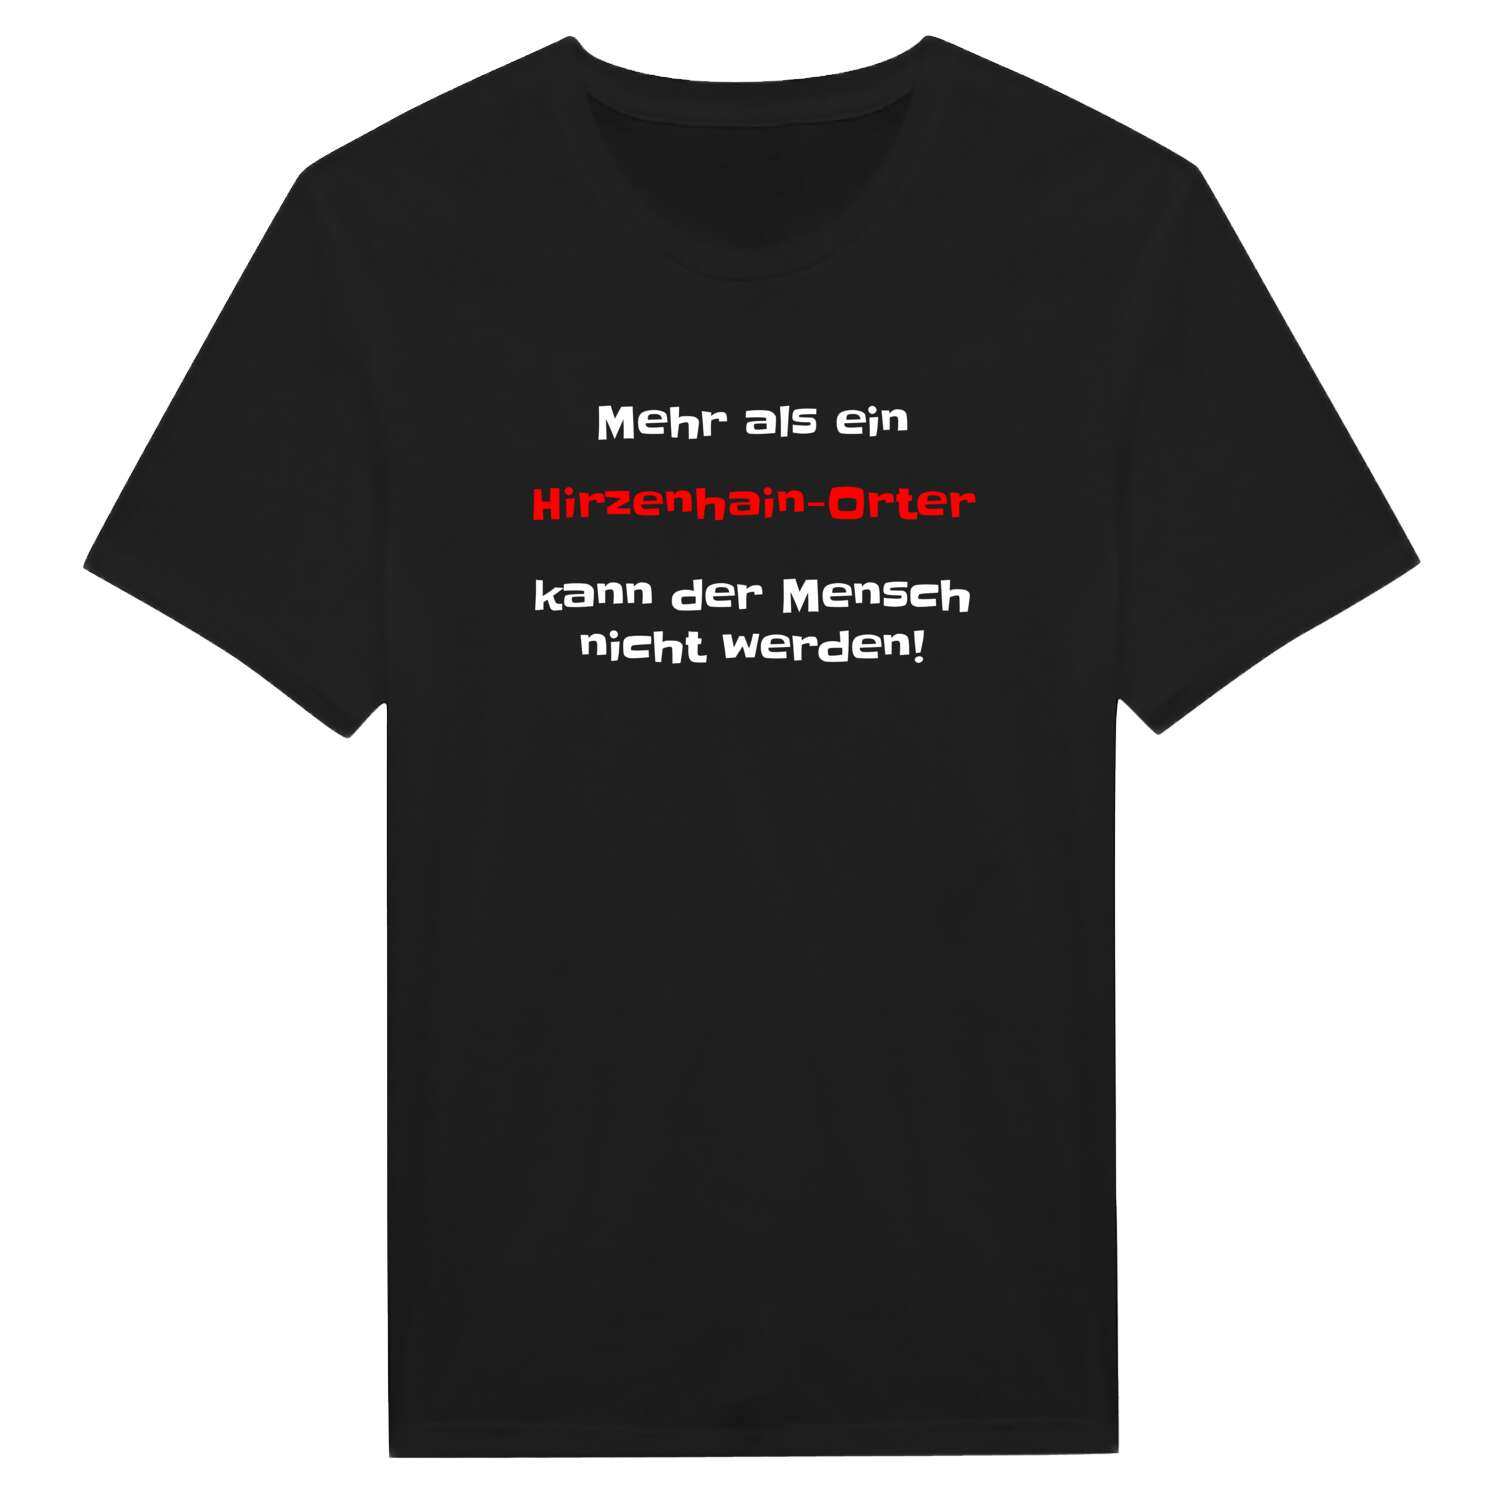 Hirzenhain-Ort T-Shirt »Mehr als ein«